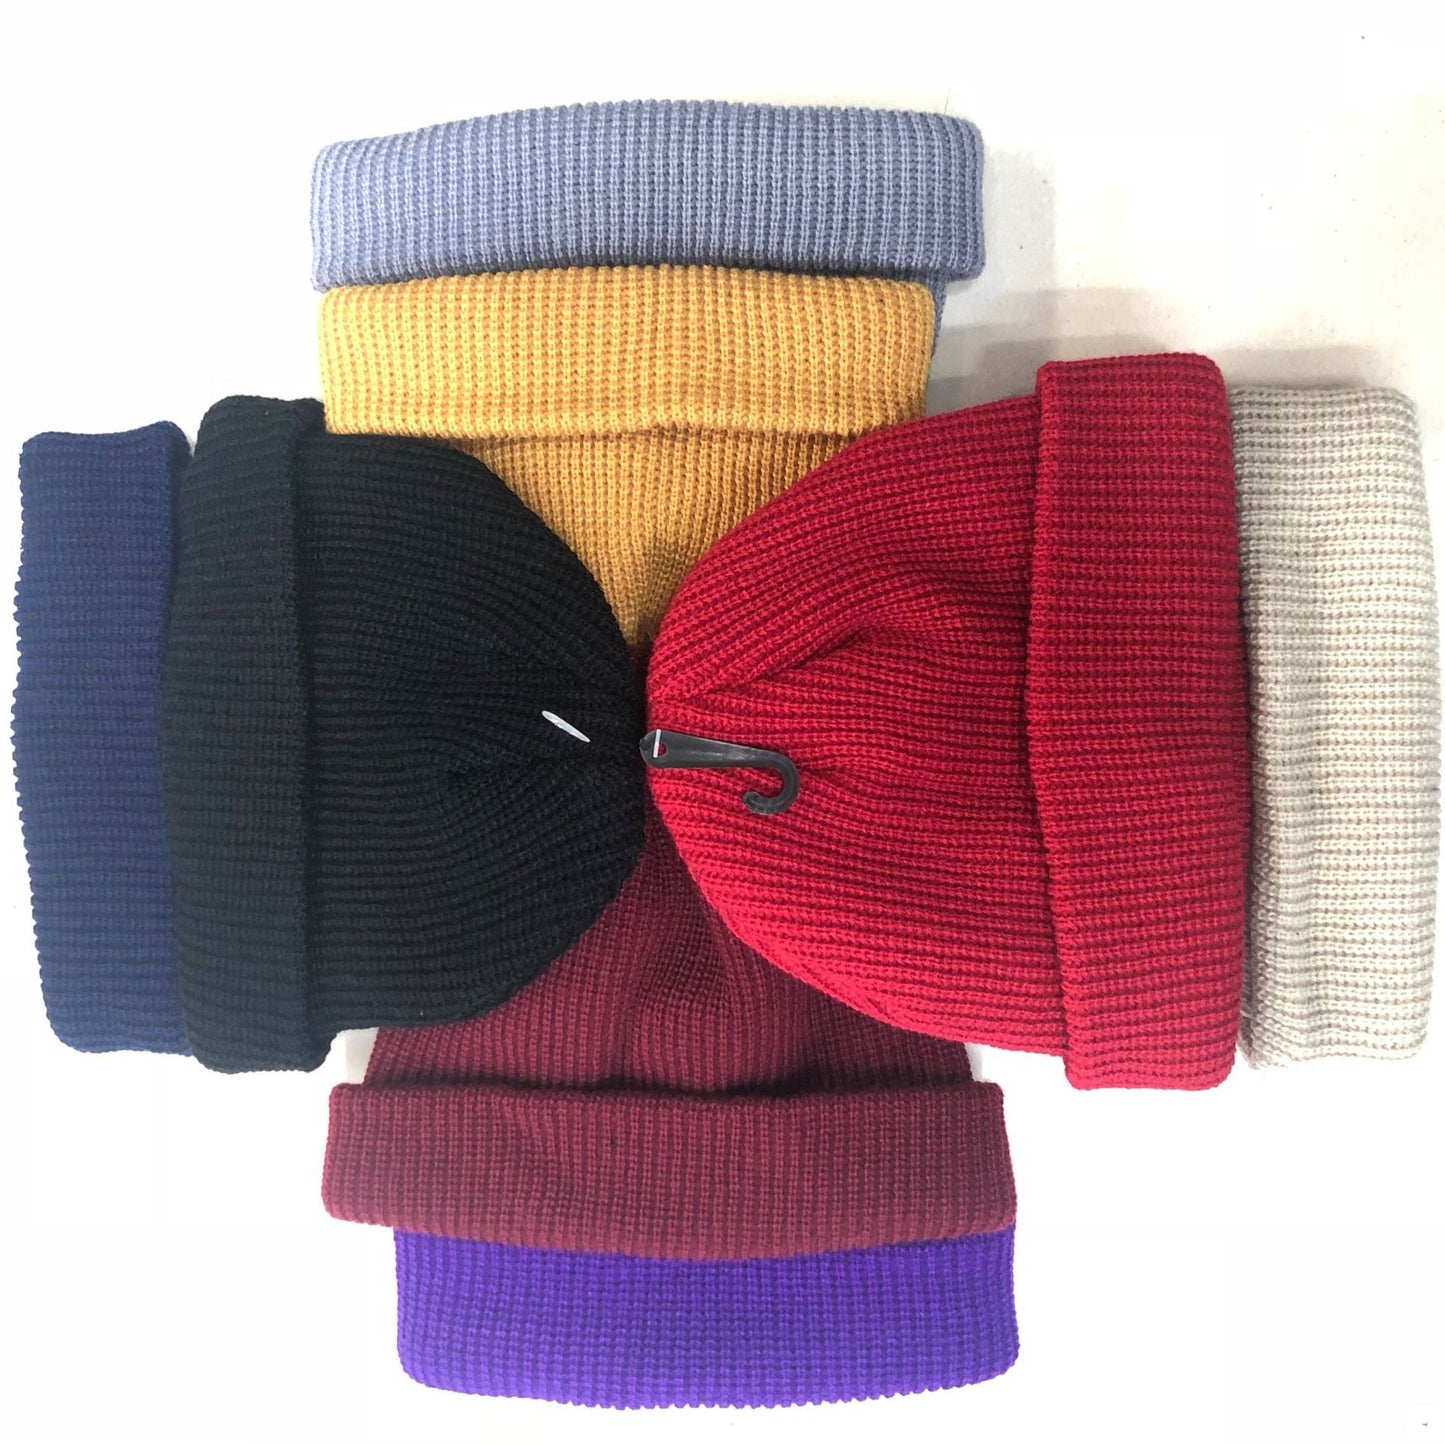 Chapeaux en tricot acrylique unisexe à la mode avec broderie de lettres